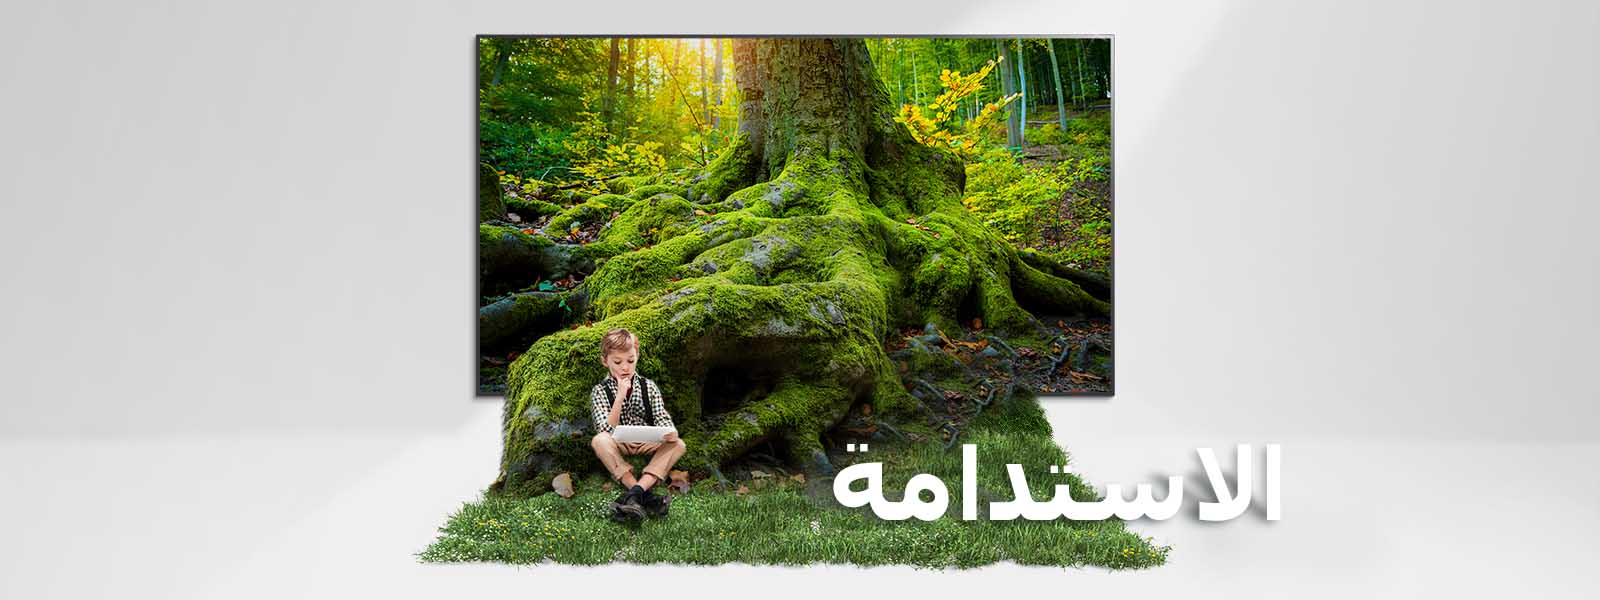 جذر شجرة عملاقة يخرج من شاشة التلفزيون ليغطي الأرضية بالعشب. طفل جالس على العشب.